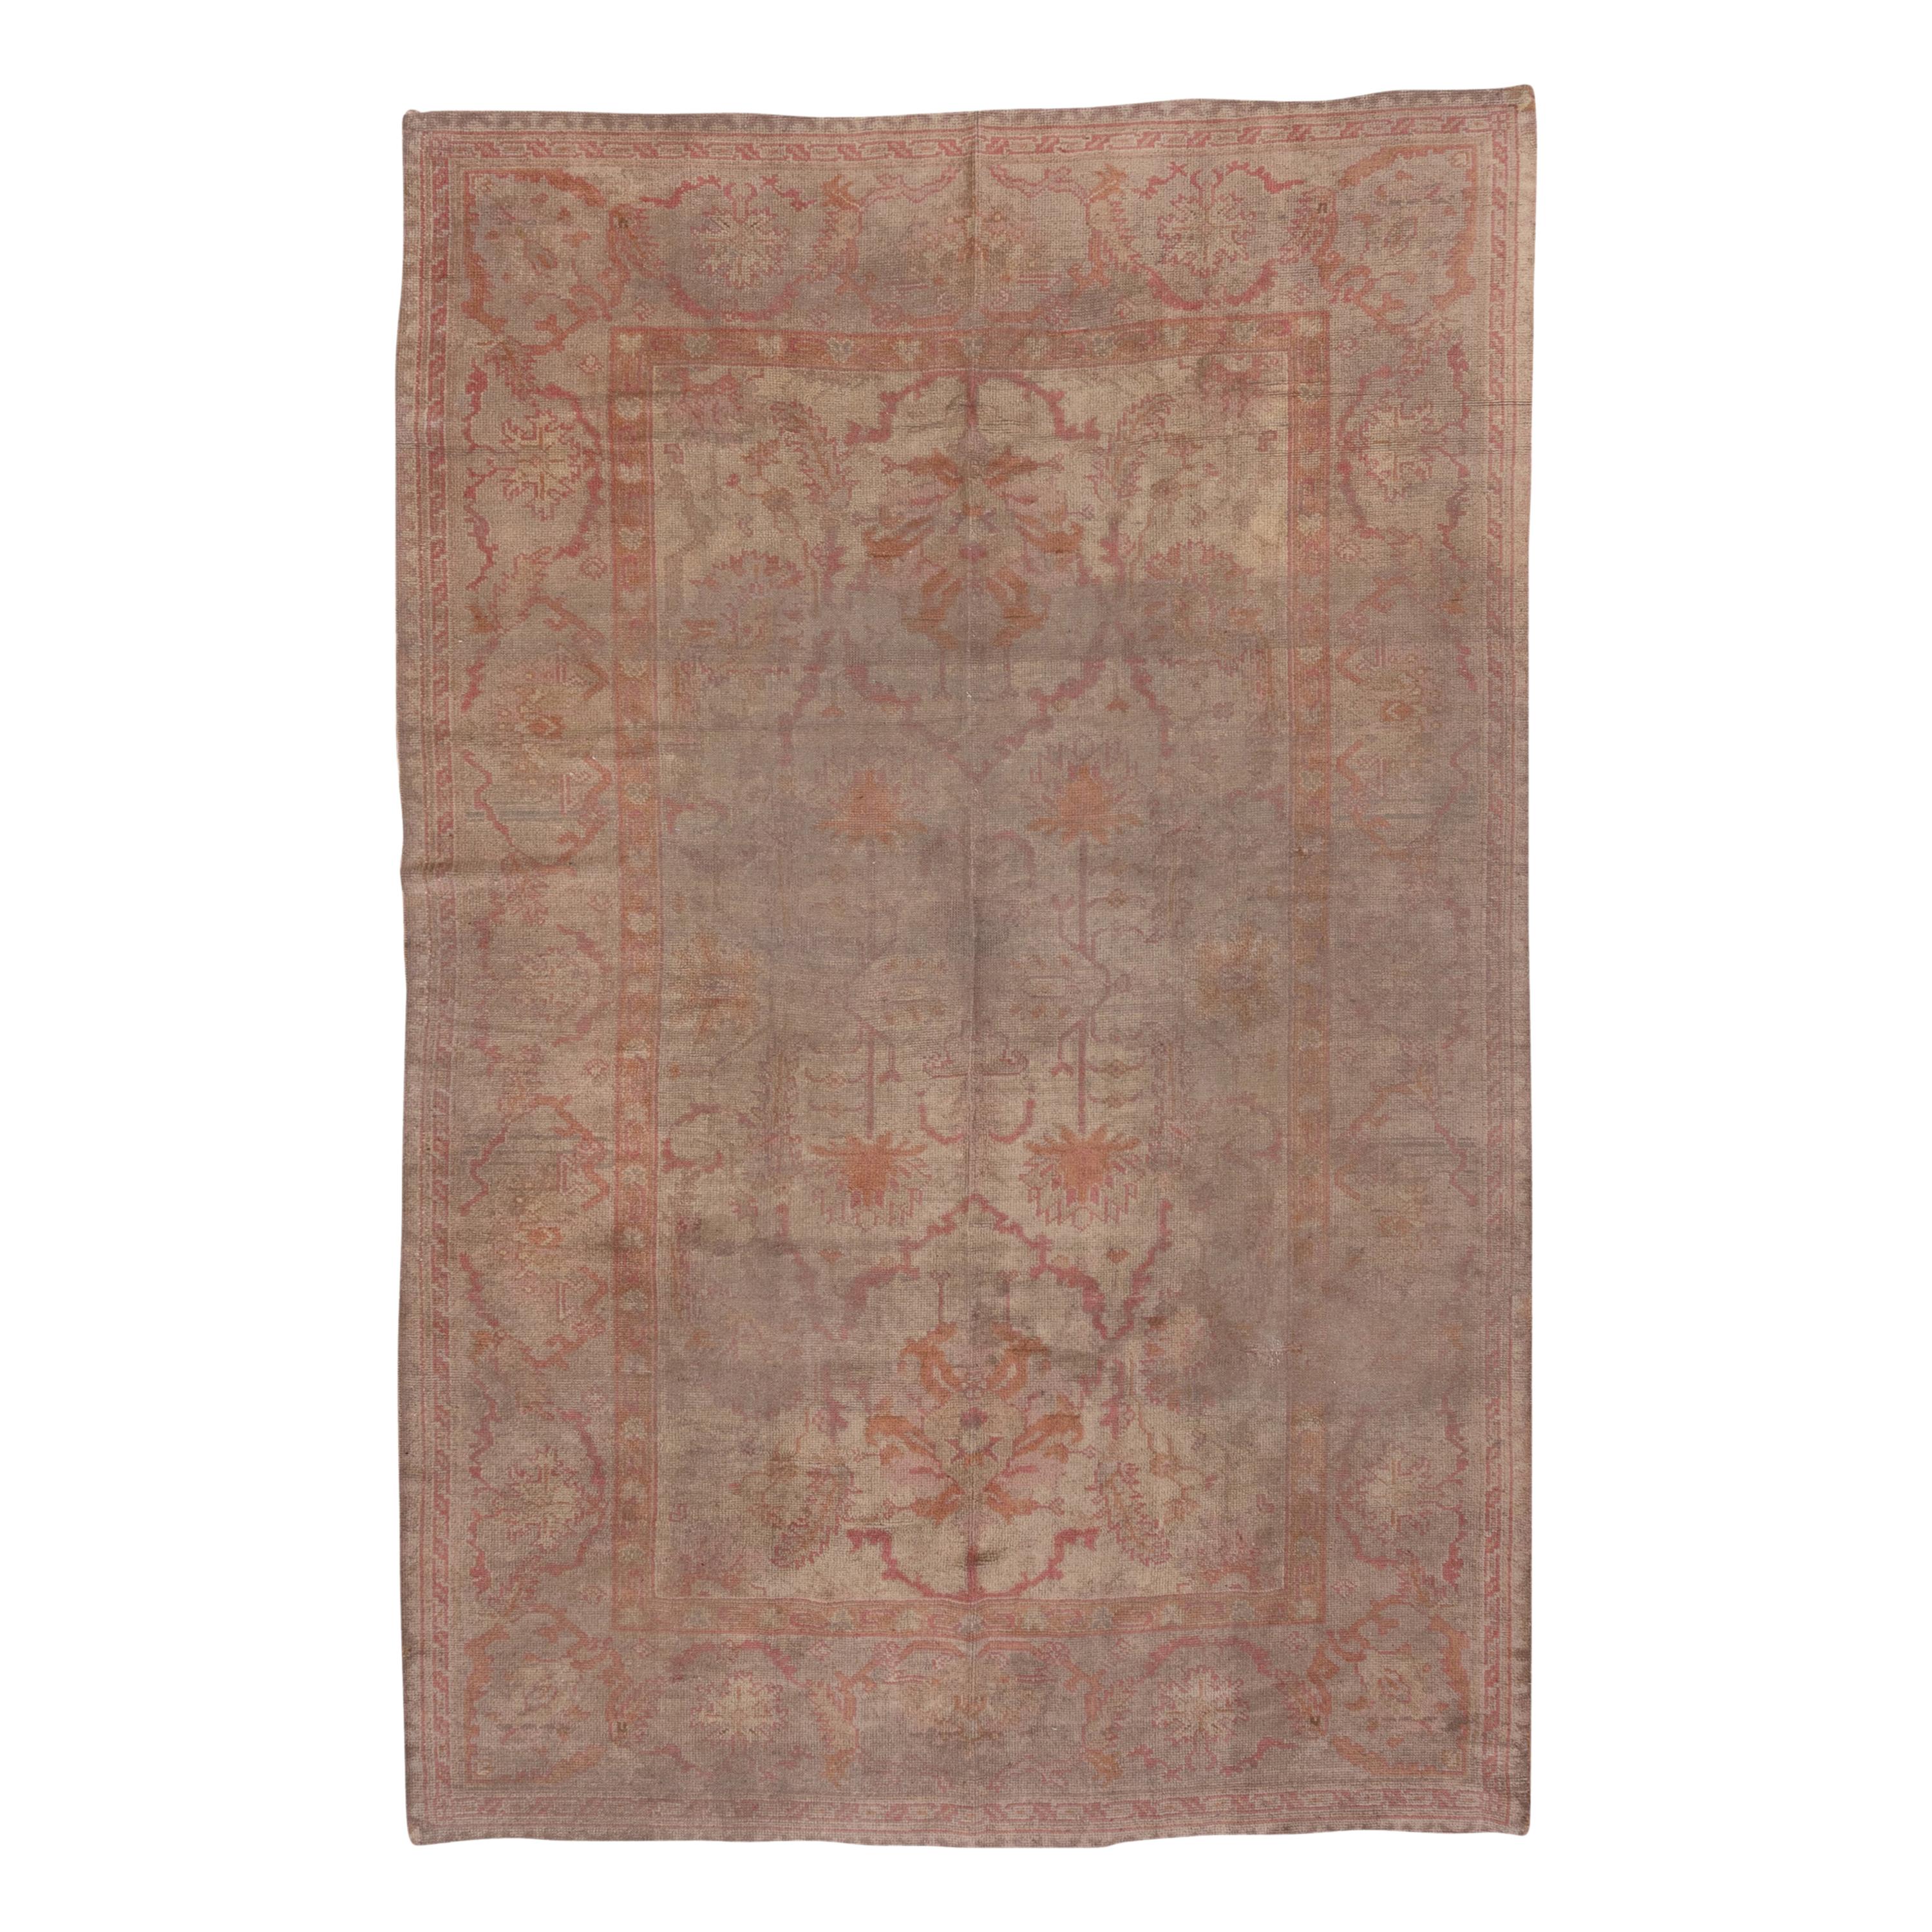 Antiker türkischer Oushak-Teppich, rosa Töne, weiche Palette, weiche Töne